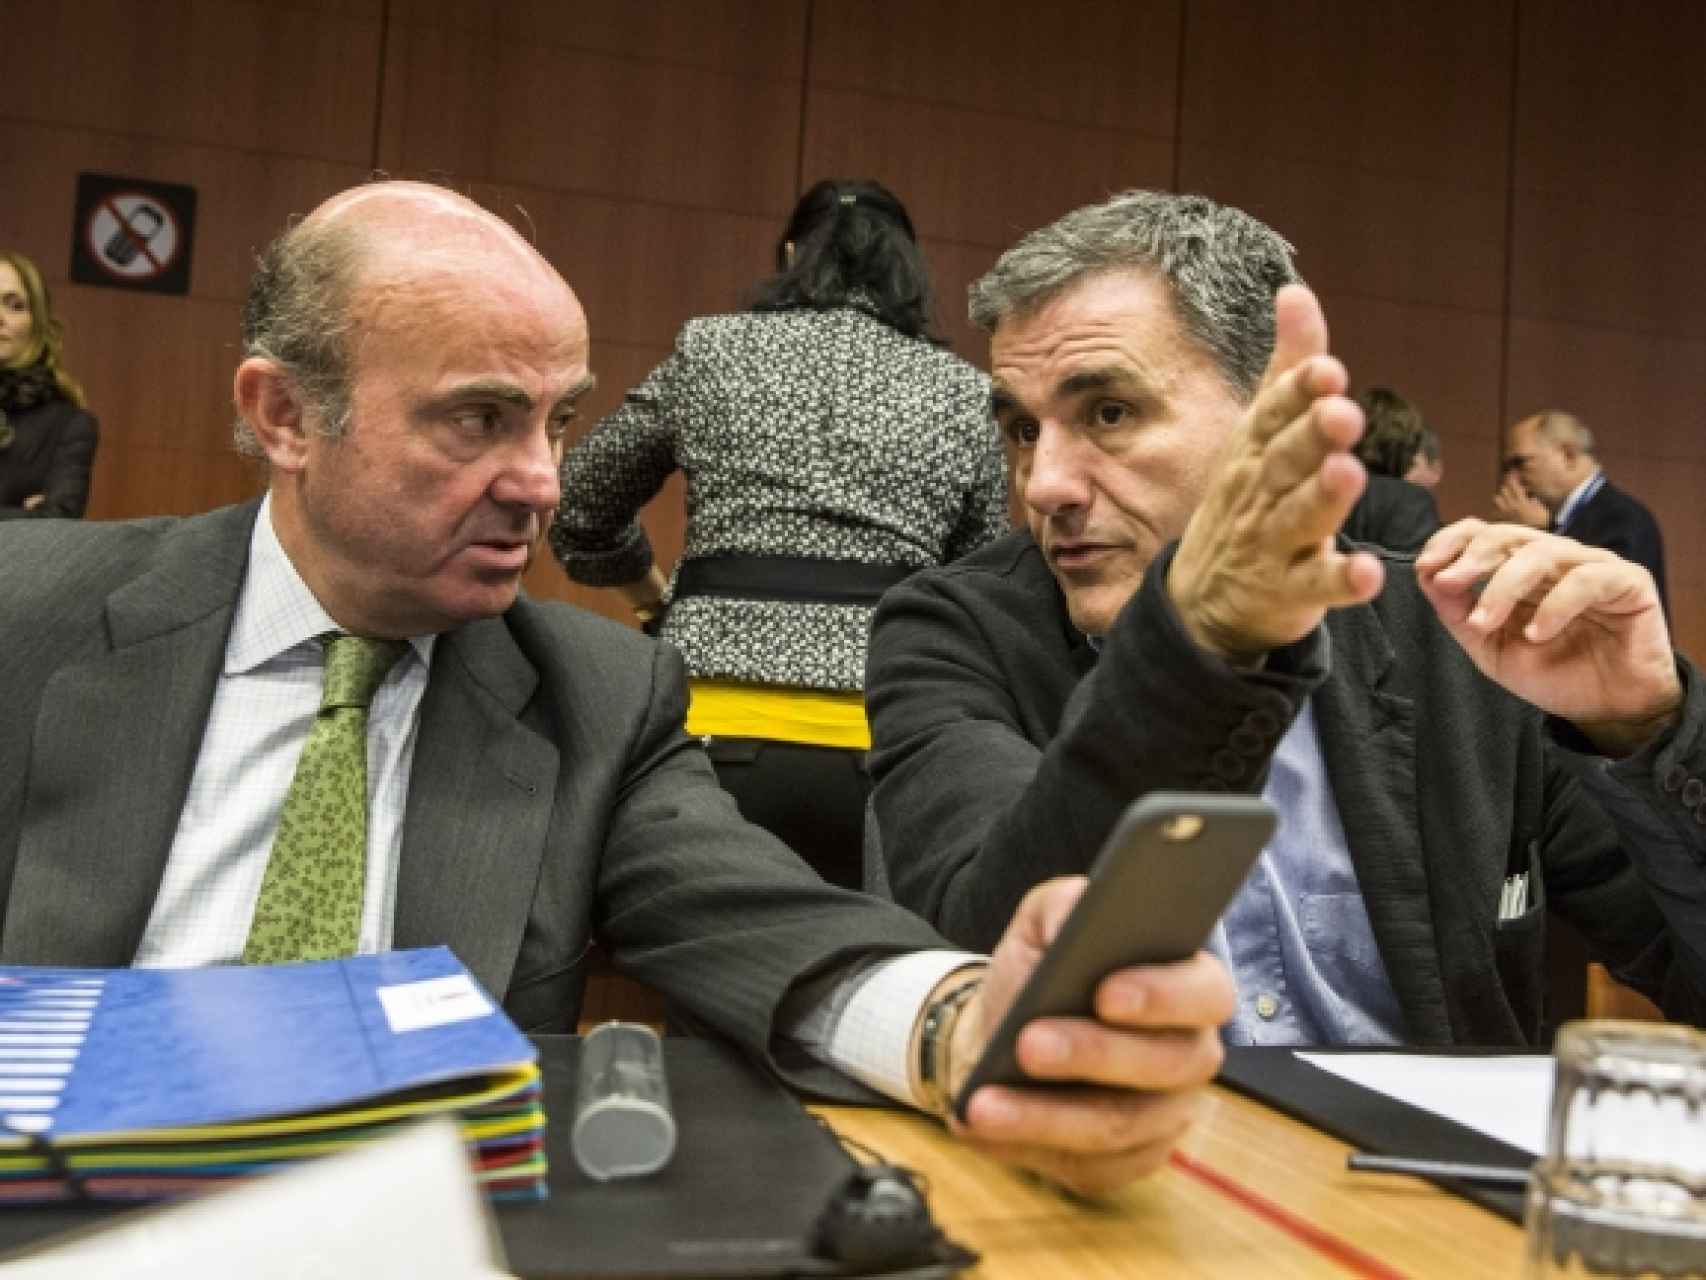 El ministro de Economía, Luis de Guindos, conversa durante el Eurogrupo con su colega griego, Euclides Tsakalotos